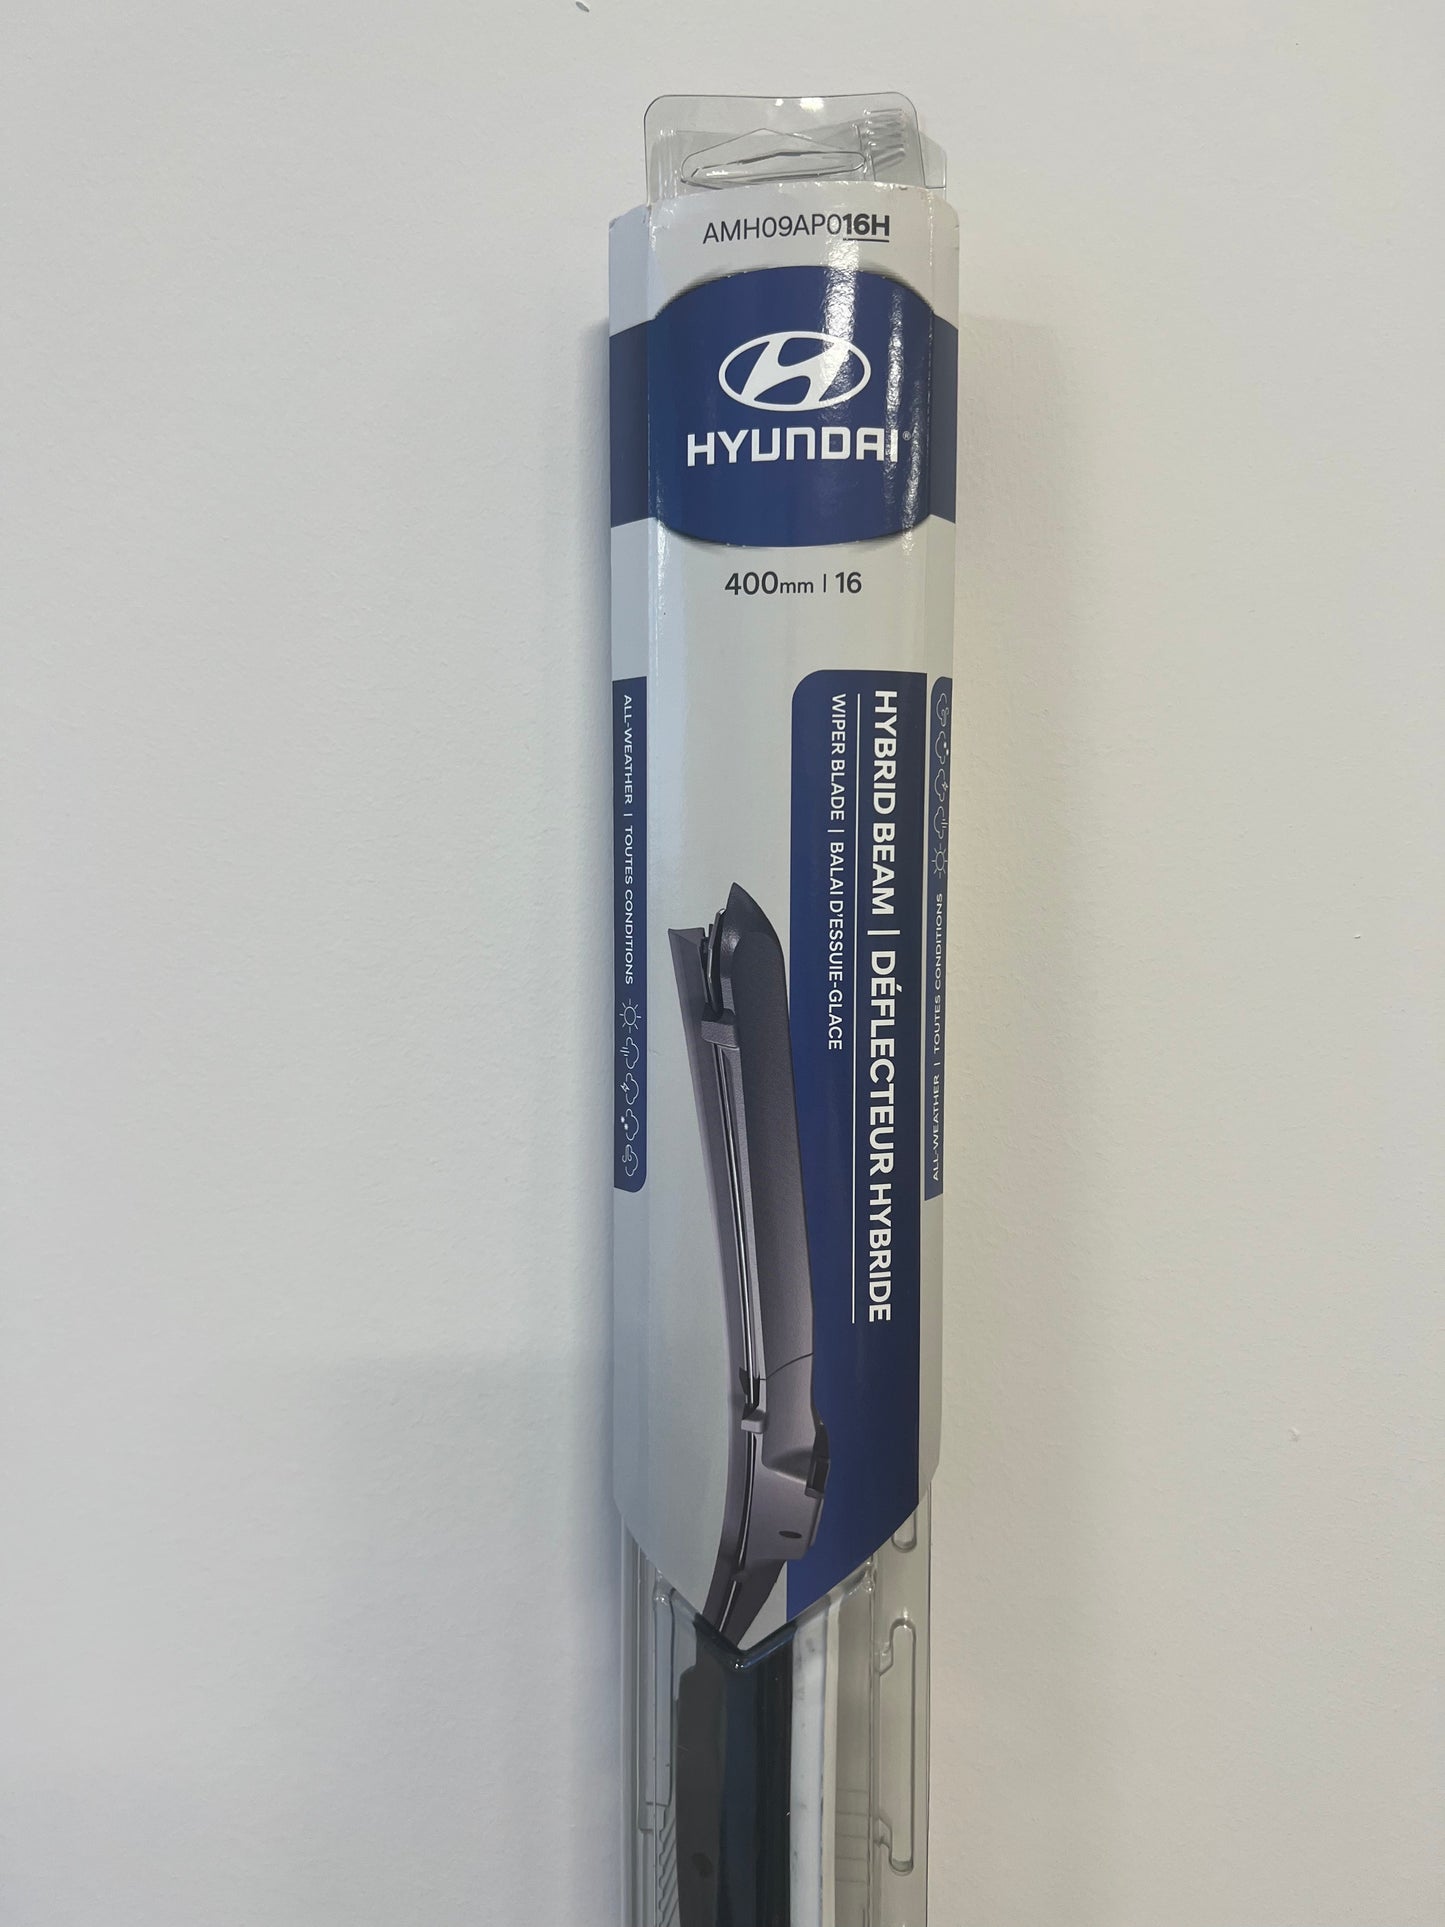 Hyundai Hybrid Beam Blades - 16 inch RH AMH09AP016H